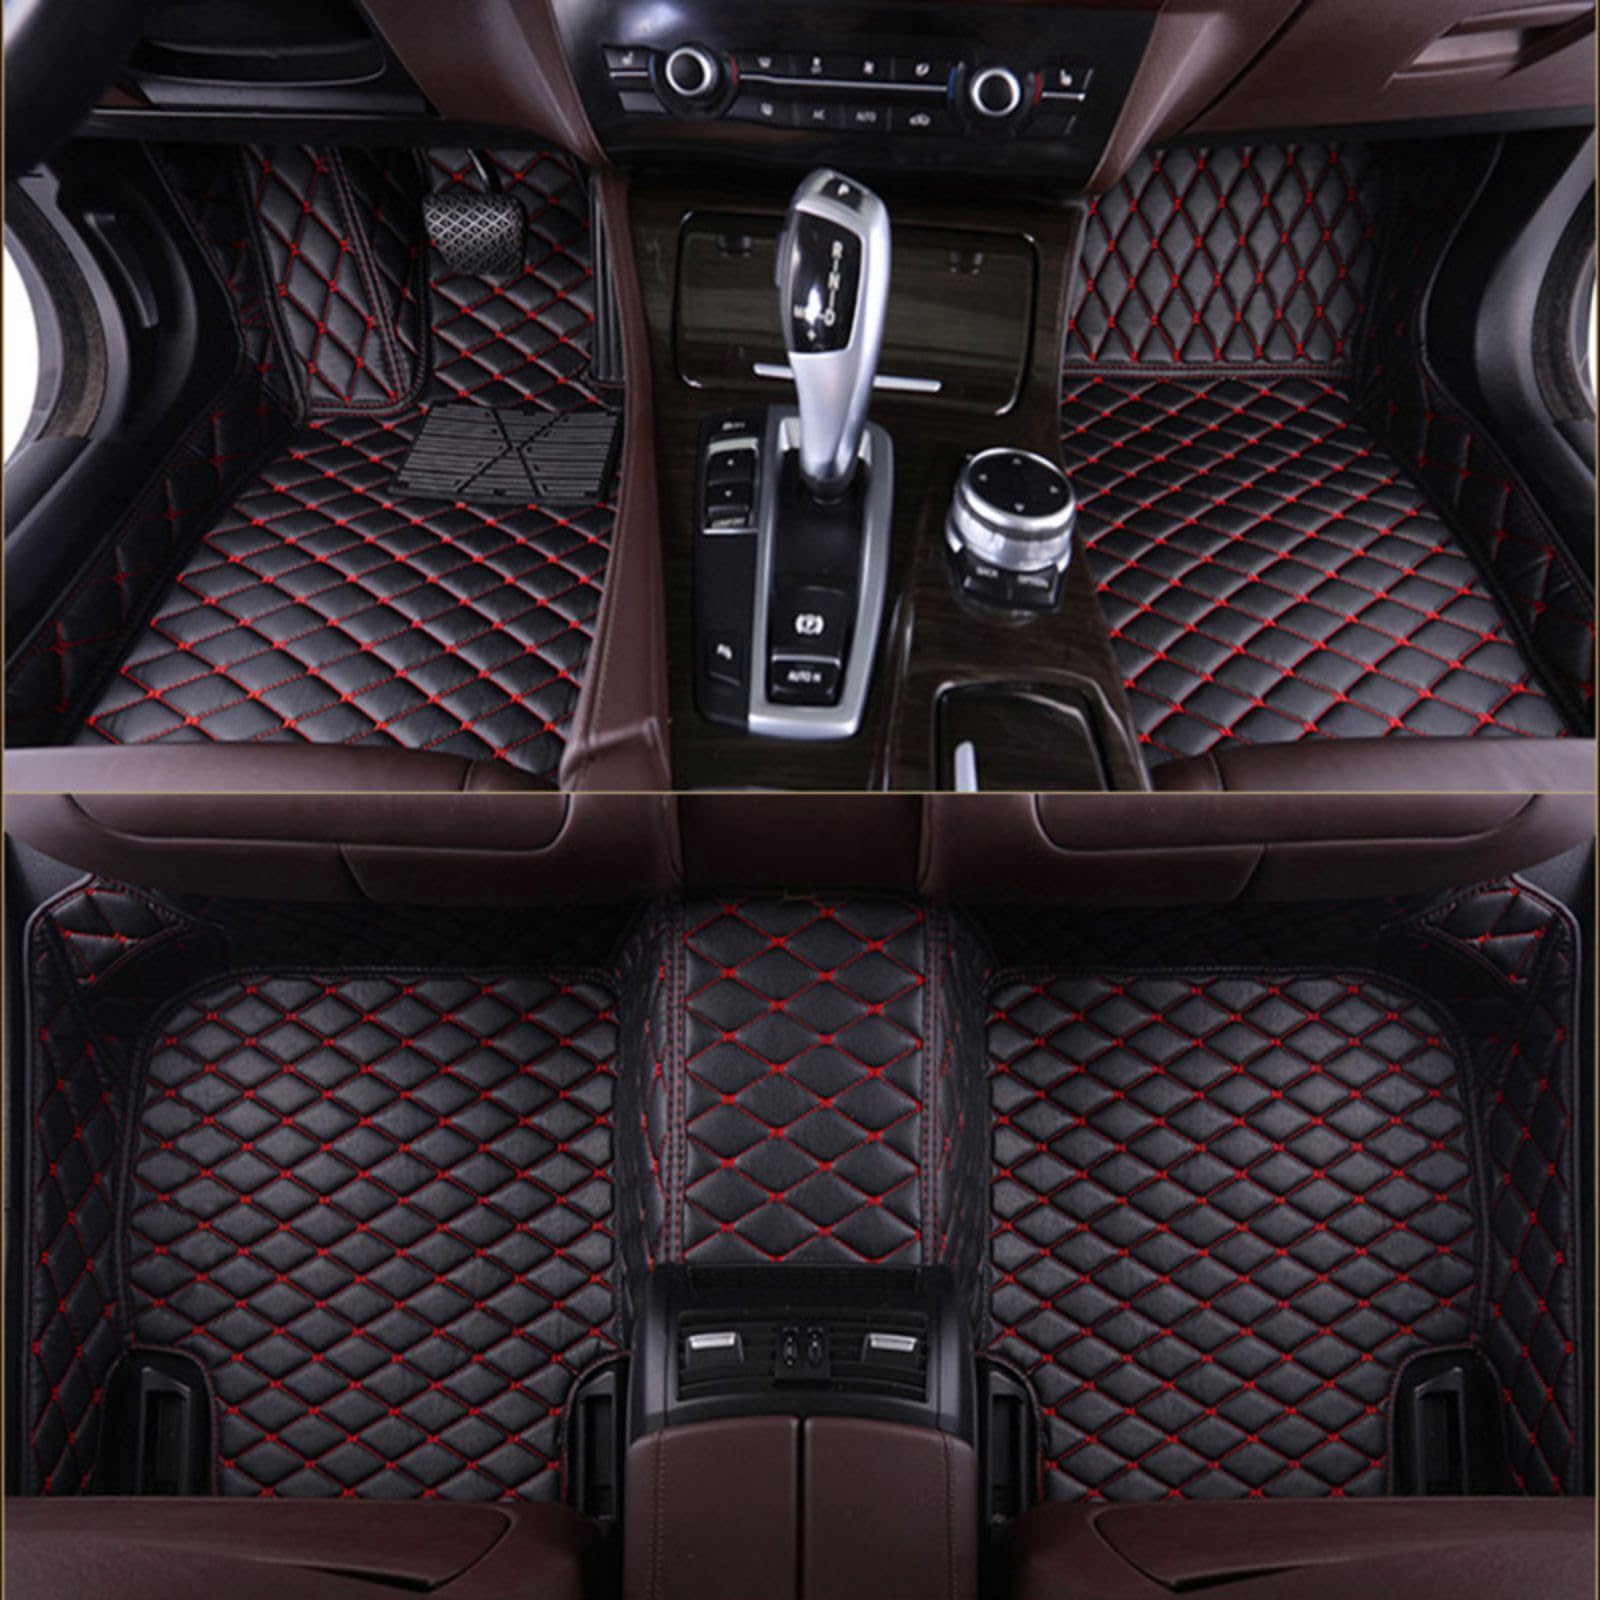 Fussmatten Auto für Audi Q7 (7seats) 2006-2015, PU-Leder Allwetter wasserdichte rutschfeste Auto Fussmatten Set Interieur-Accessoires,Black von LYYFCB